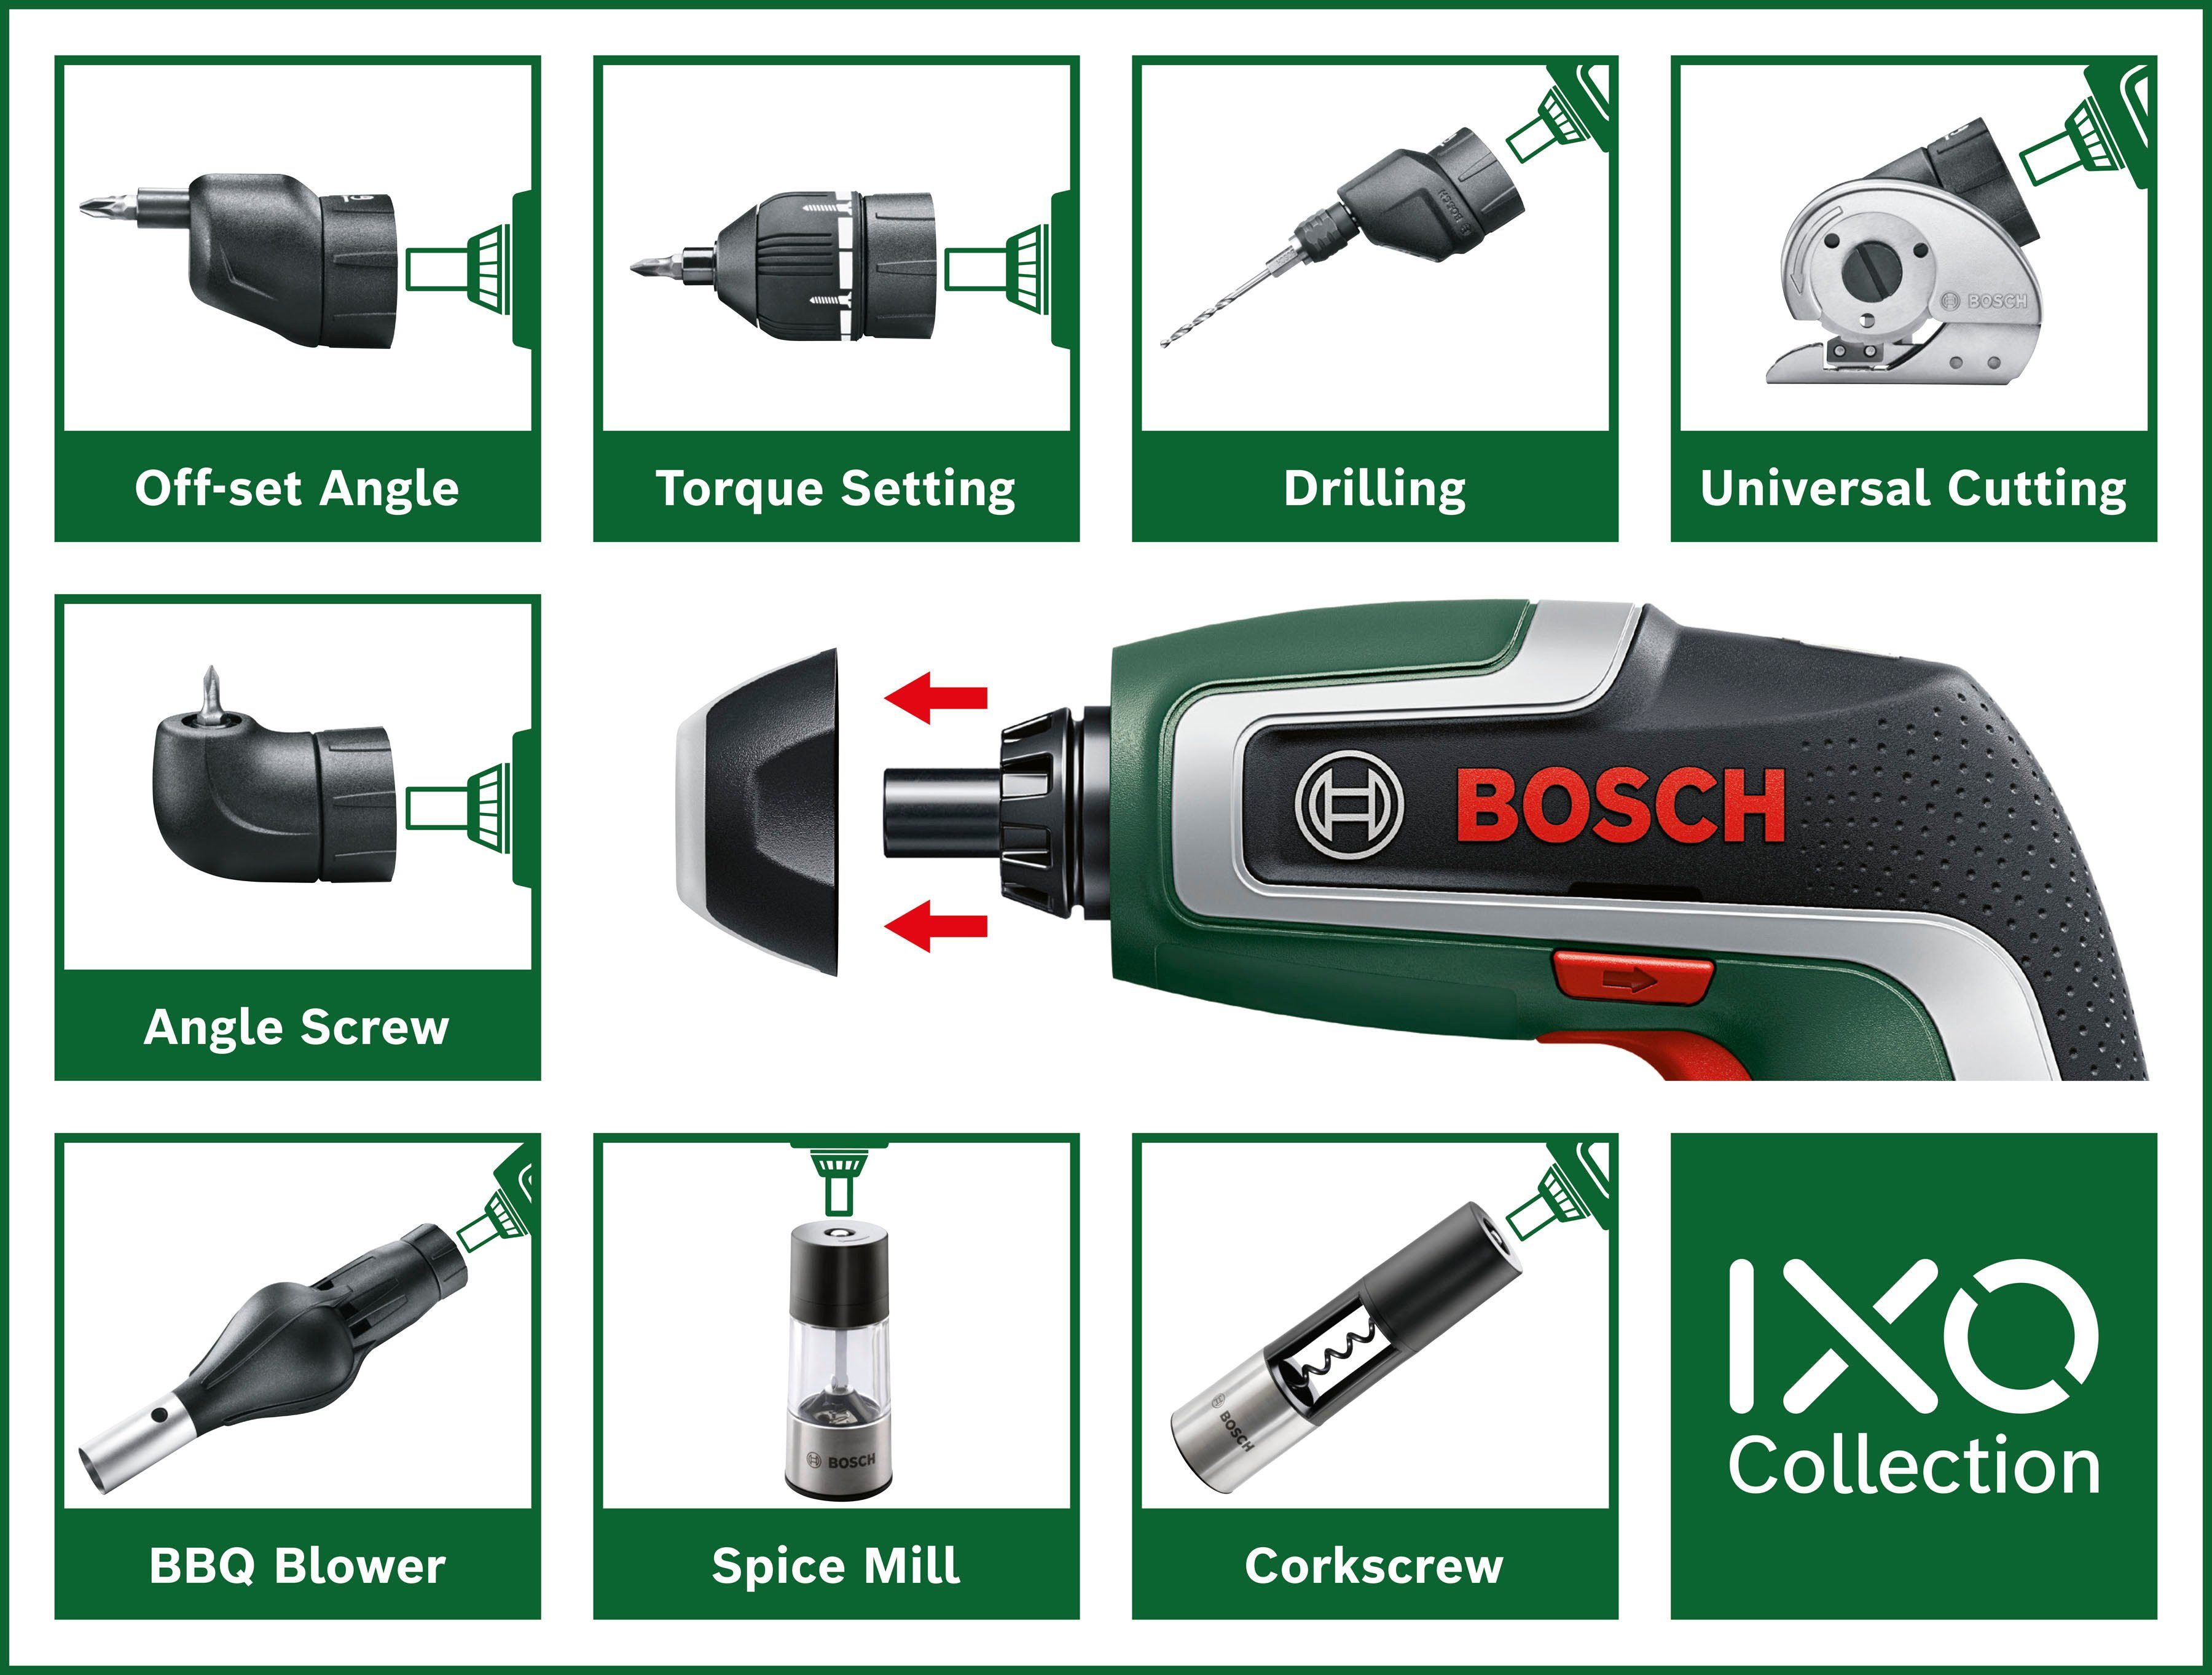 & Standard-Schrauberbits, IXO mit Akku-Schrauber Bit-Halter Aufbewahrungsbox Garden Home und 7, Bosch Nm, 10 5,5